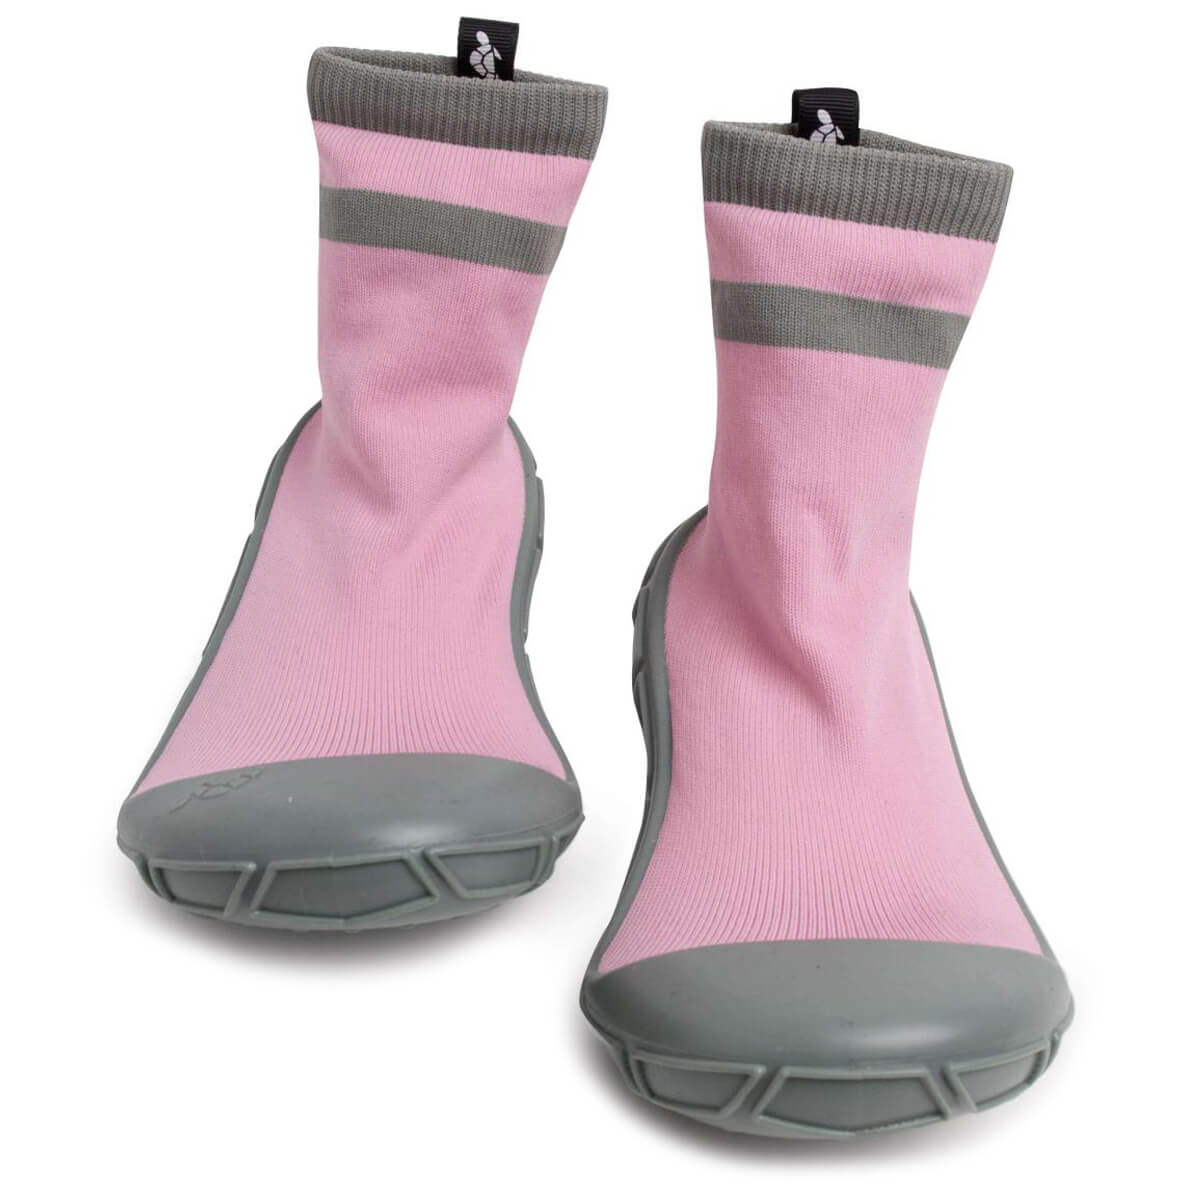 Turtl Sockenschuh "Socks in a Shell" pink